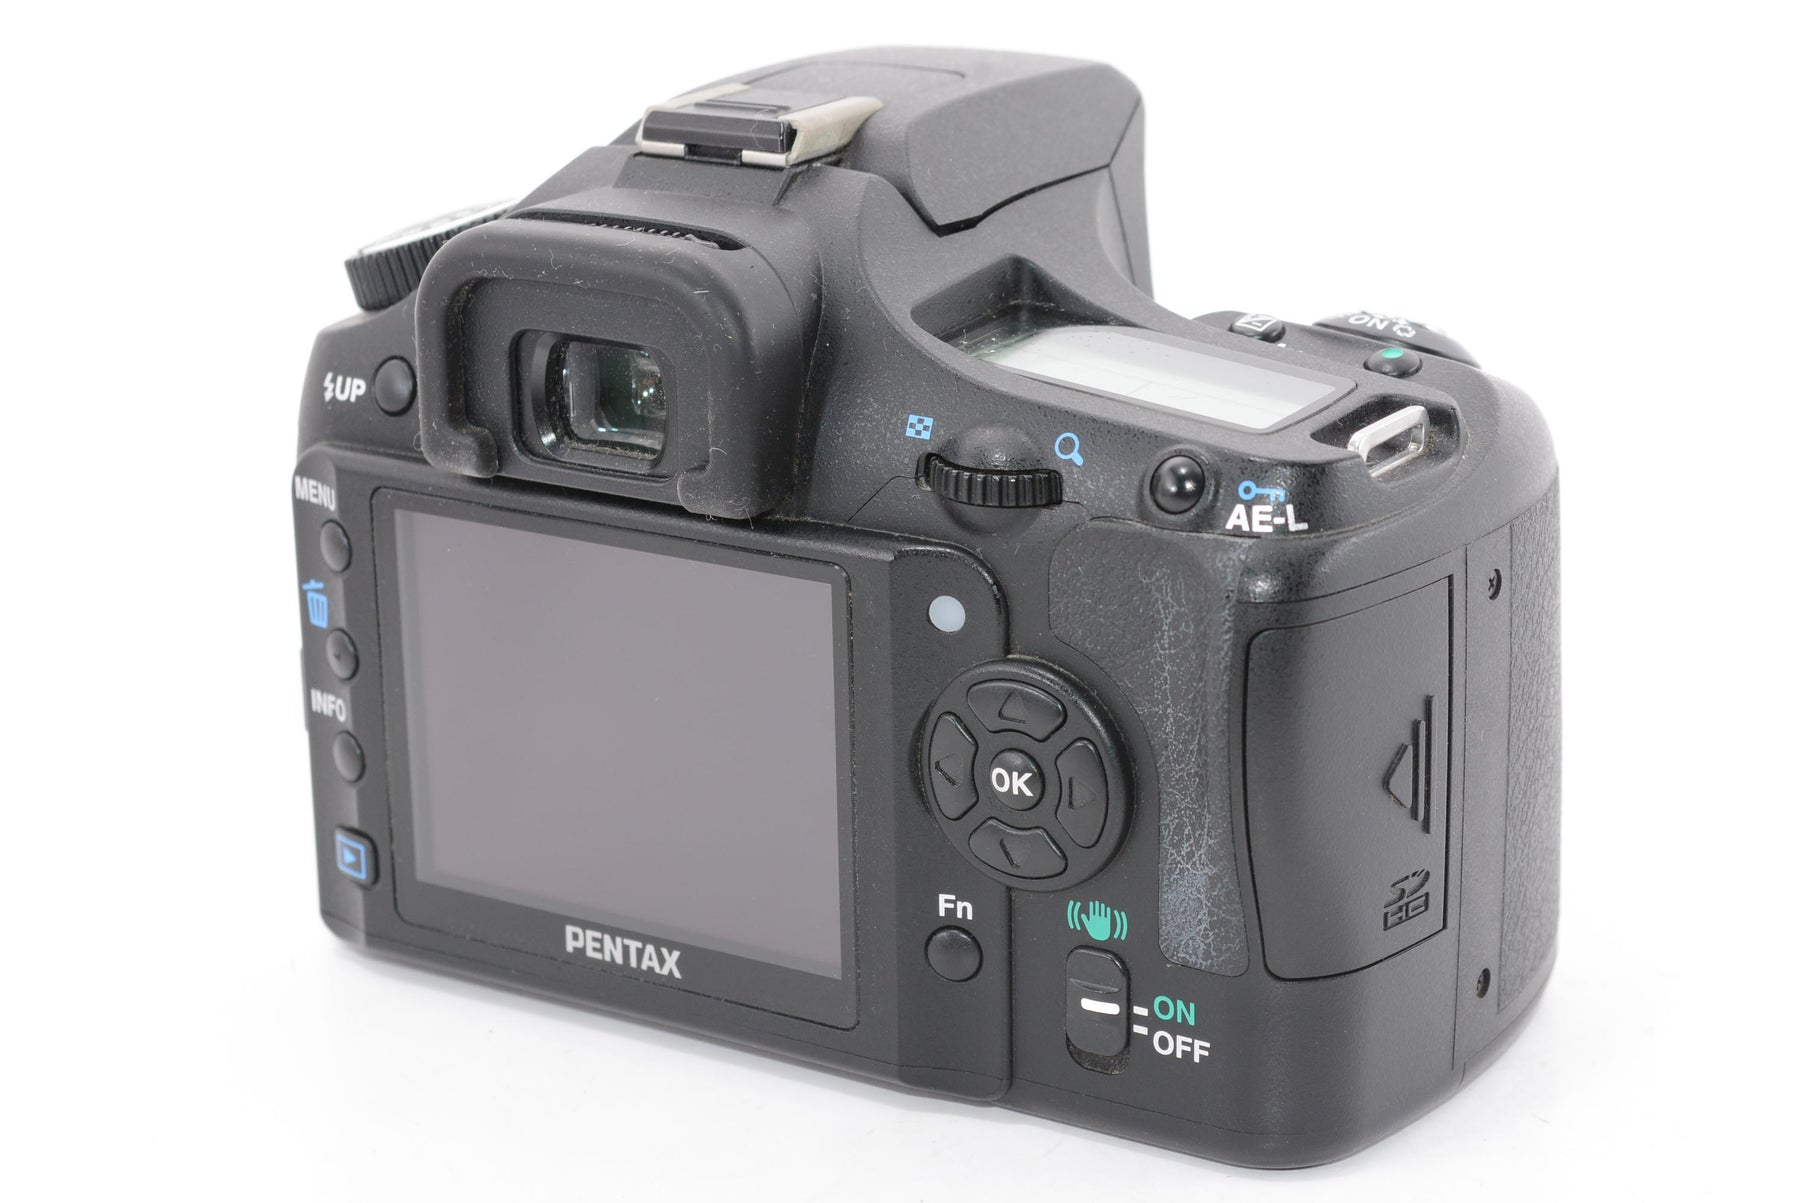 【外観並級】PENTAX デジタル一眼レフカメラ K200D ボディ